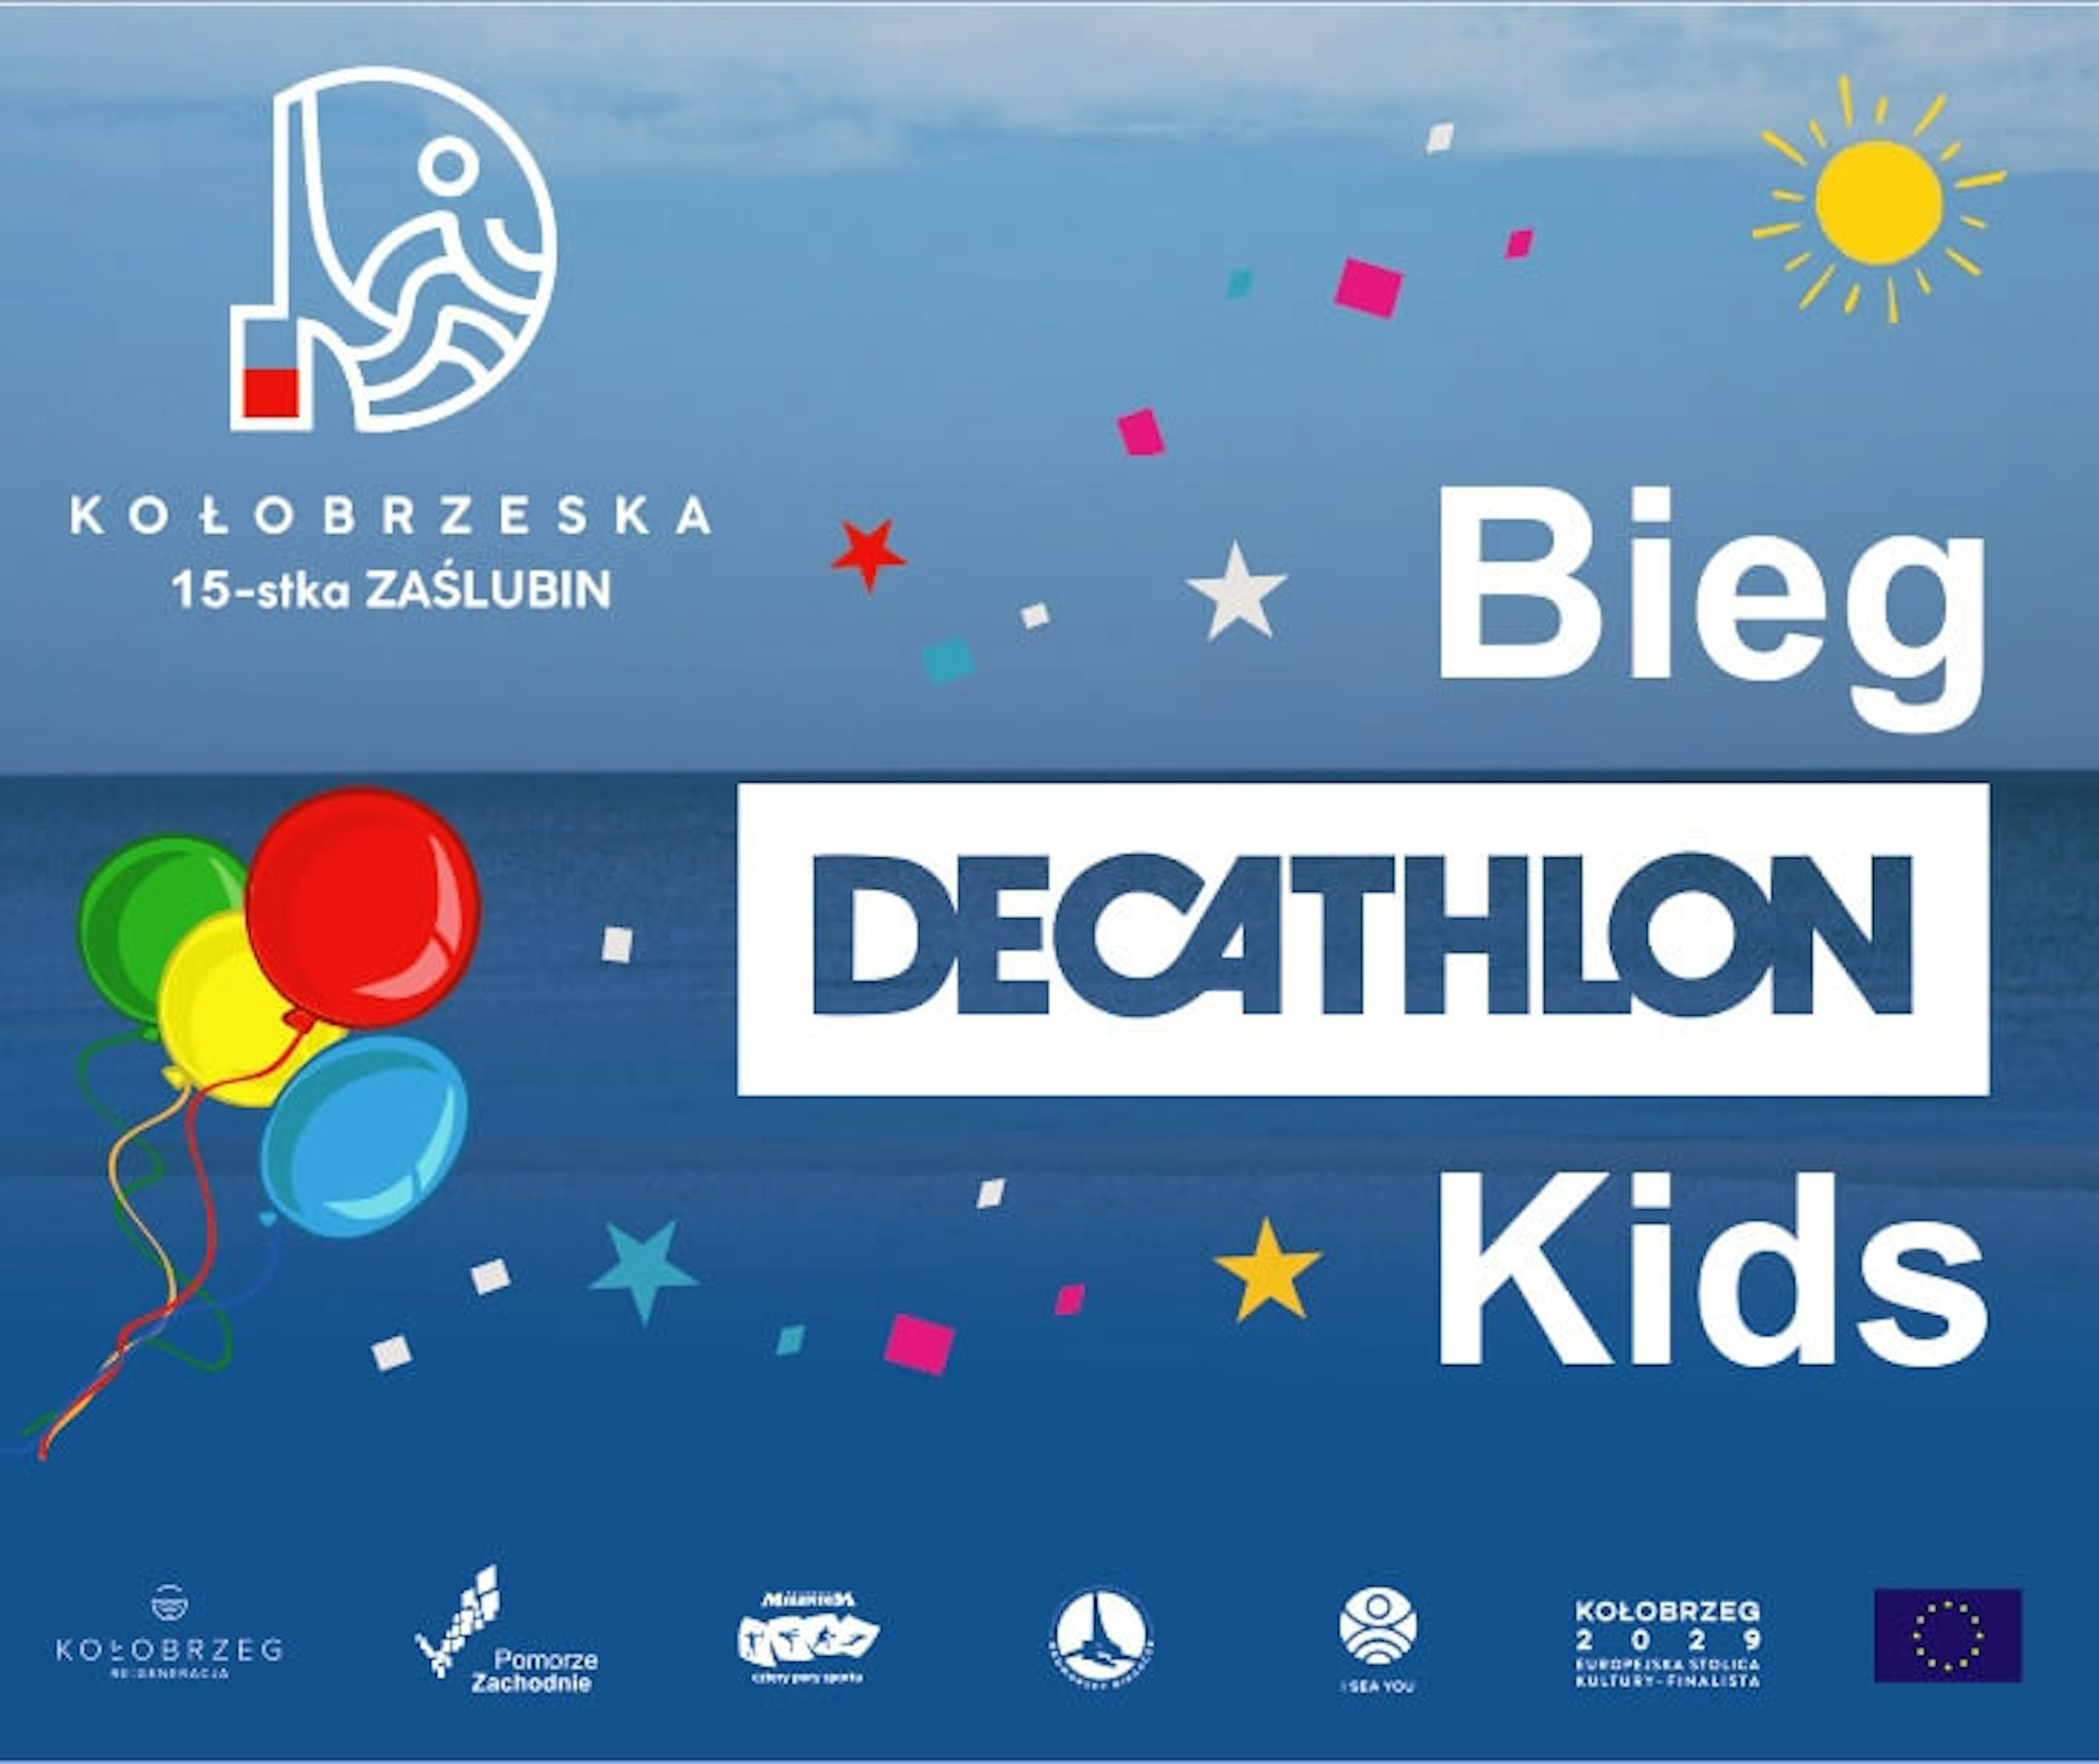 Bieg Decathlon KIDS - Zapraszamy do zabawy najmłodszych biegaczy !